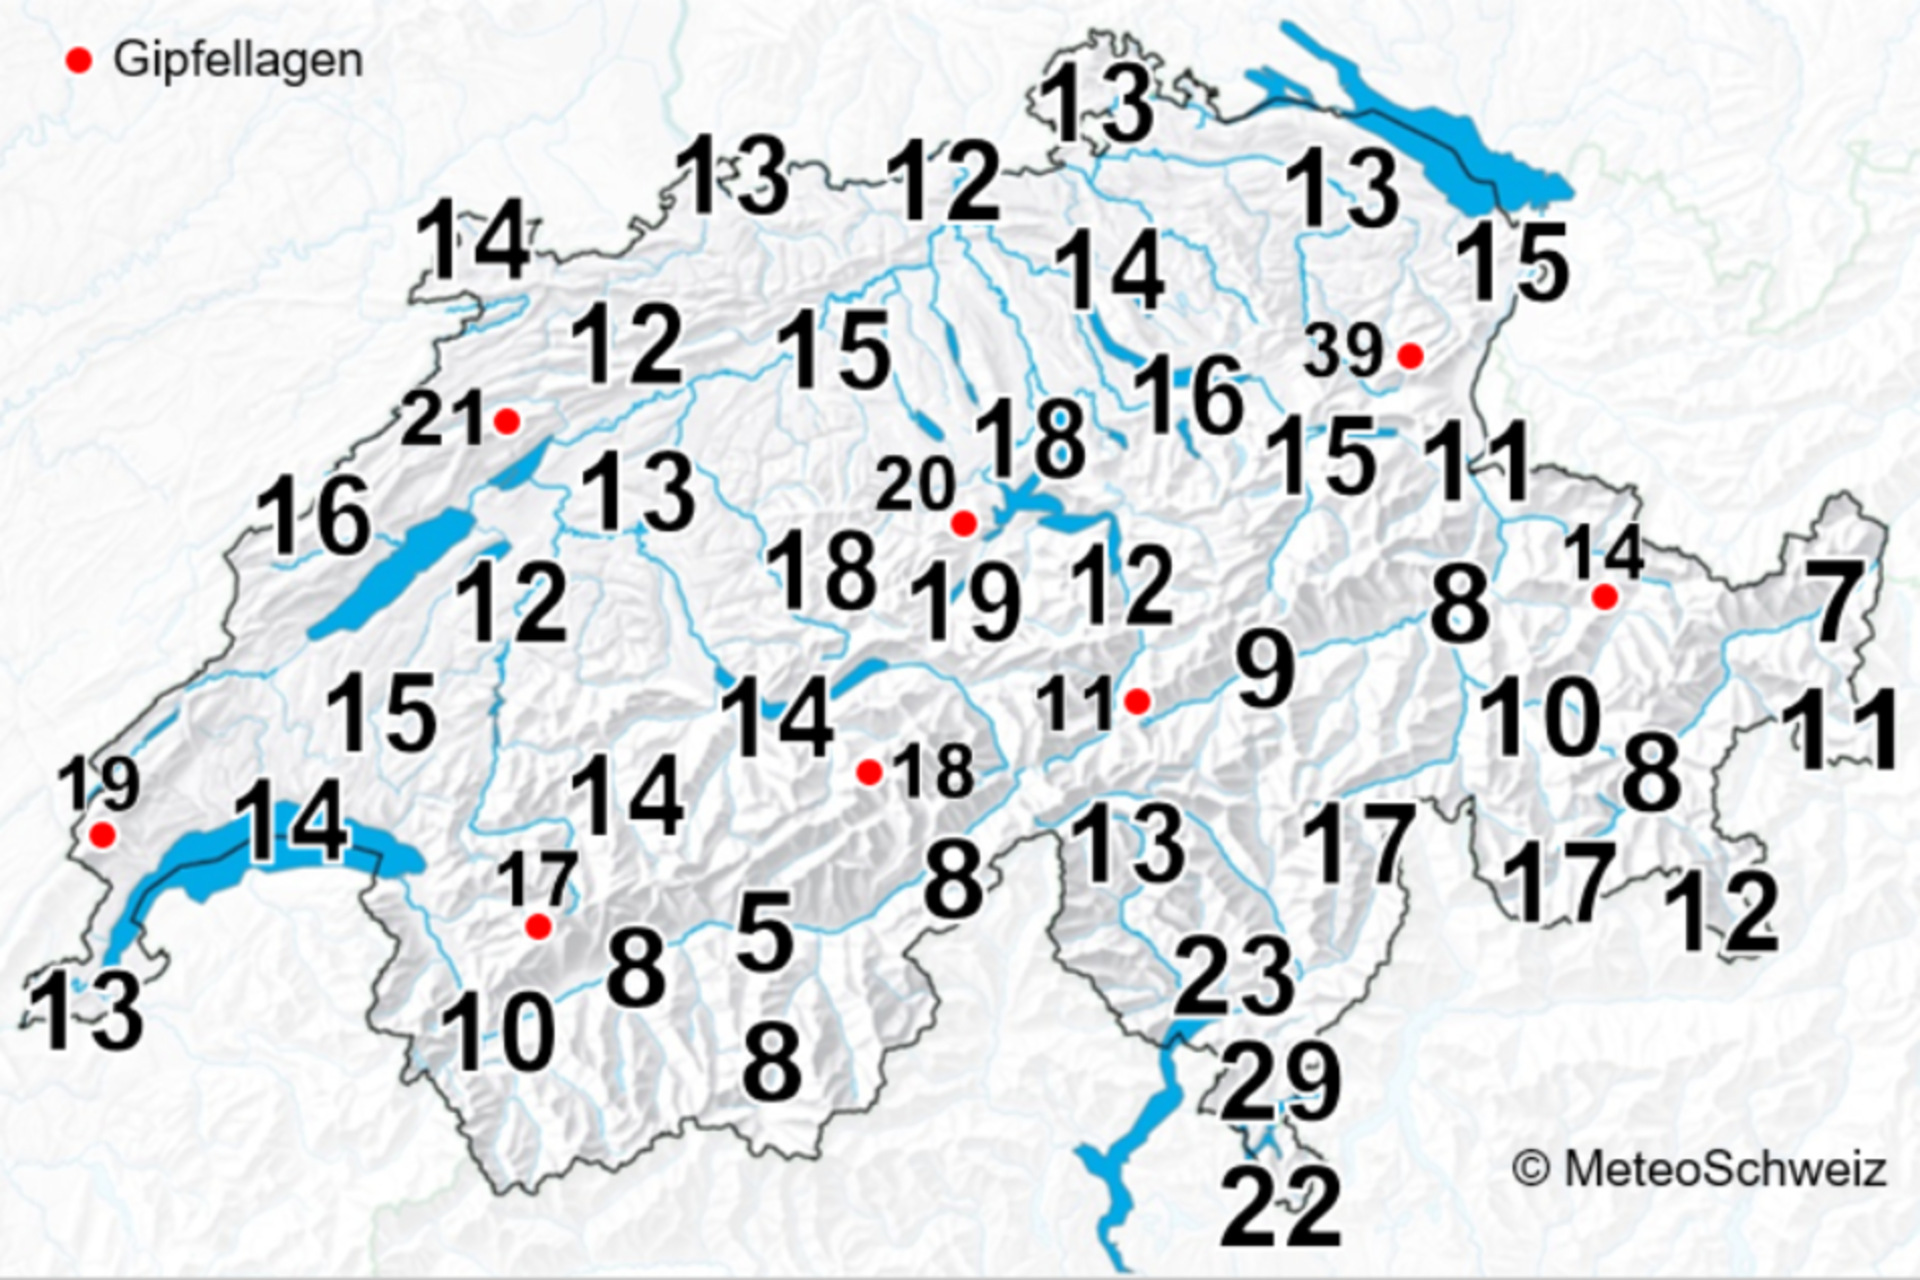 Blixtnedslag: det genomsnittliga antalet dagar med åskväder per år i Schweiz, vilket betyder minst ett åskväder per dag, för perioden 2000-2020